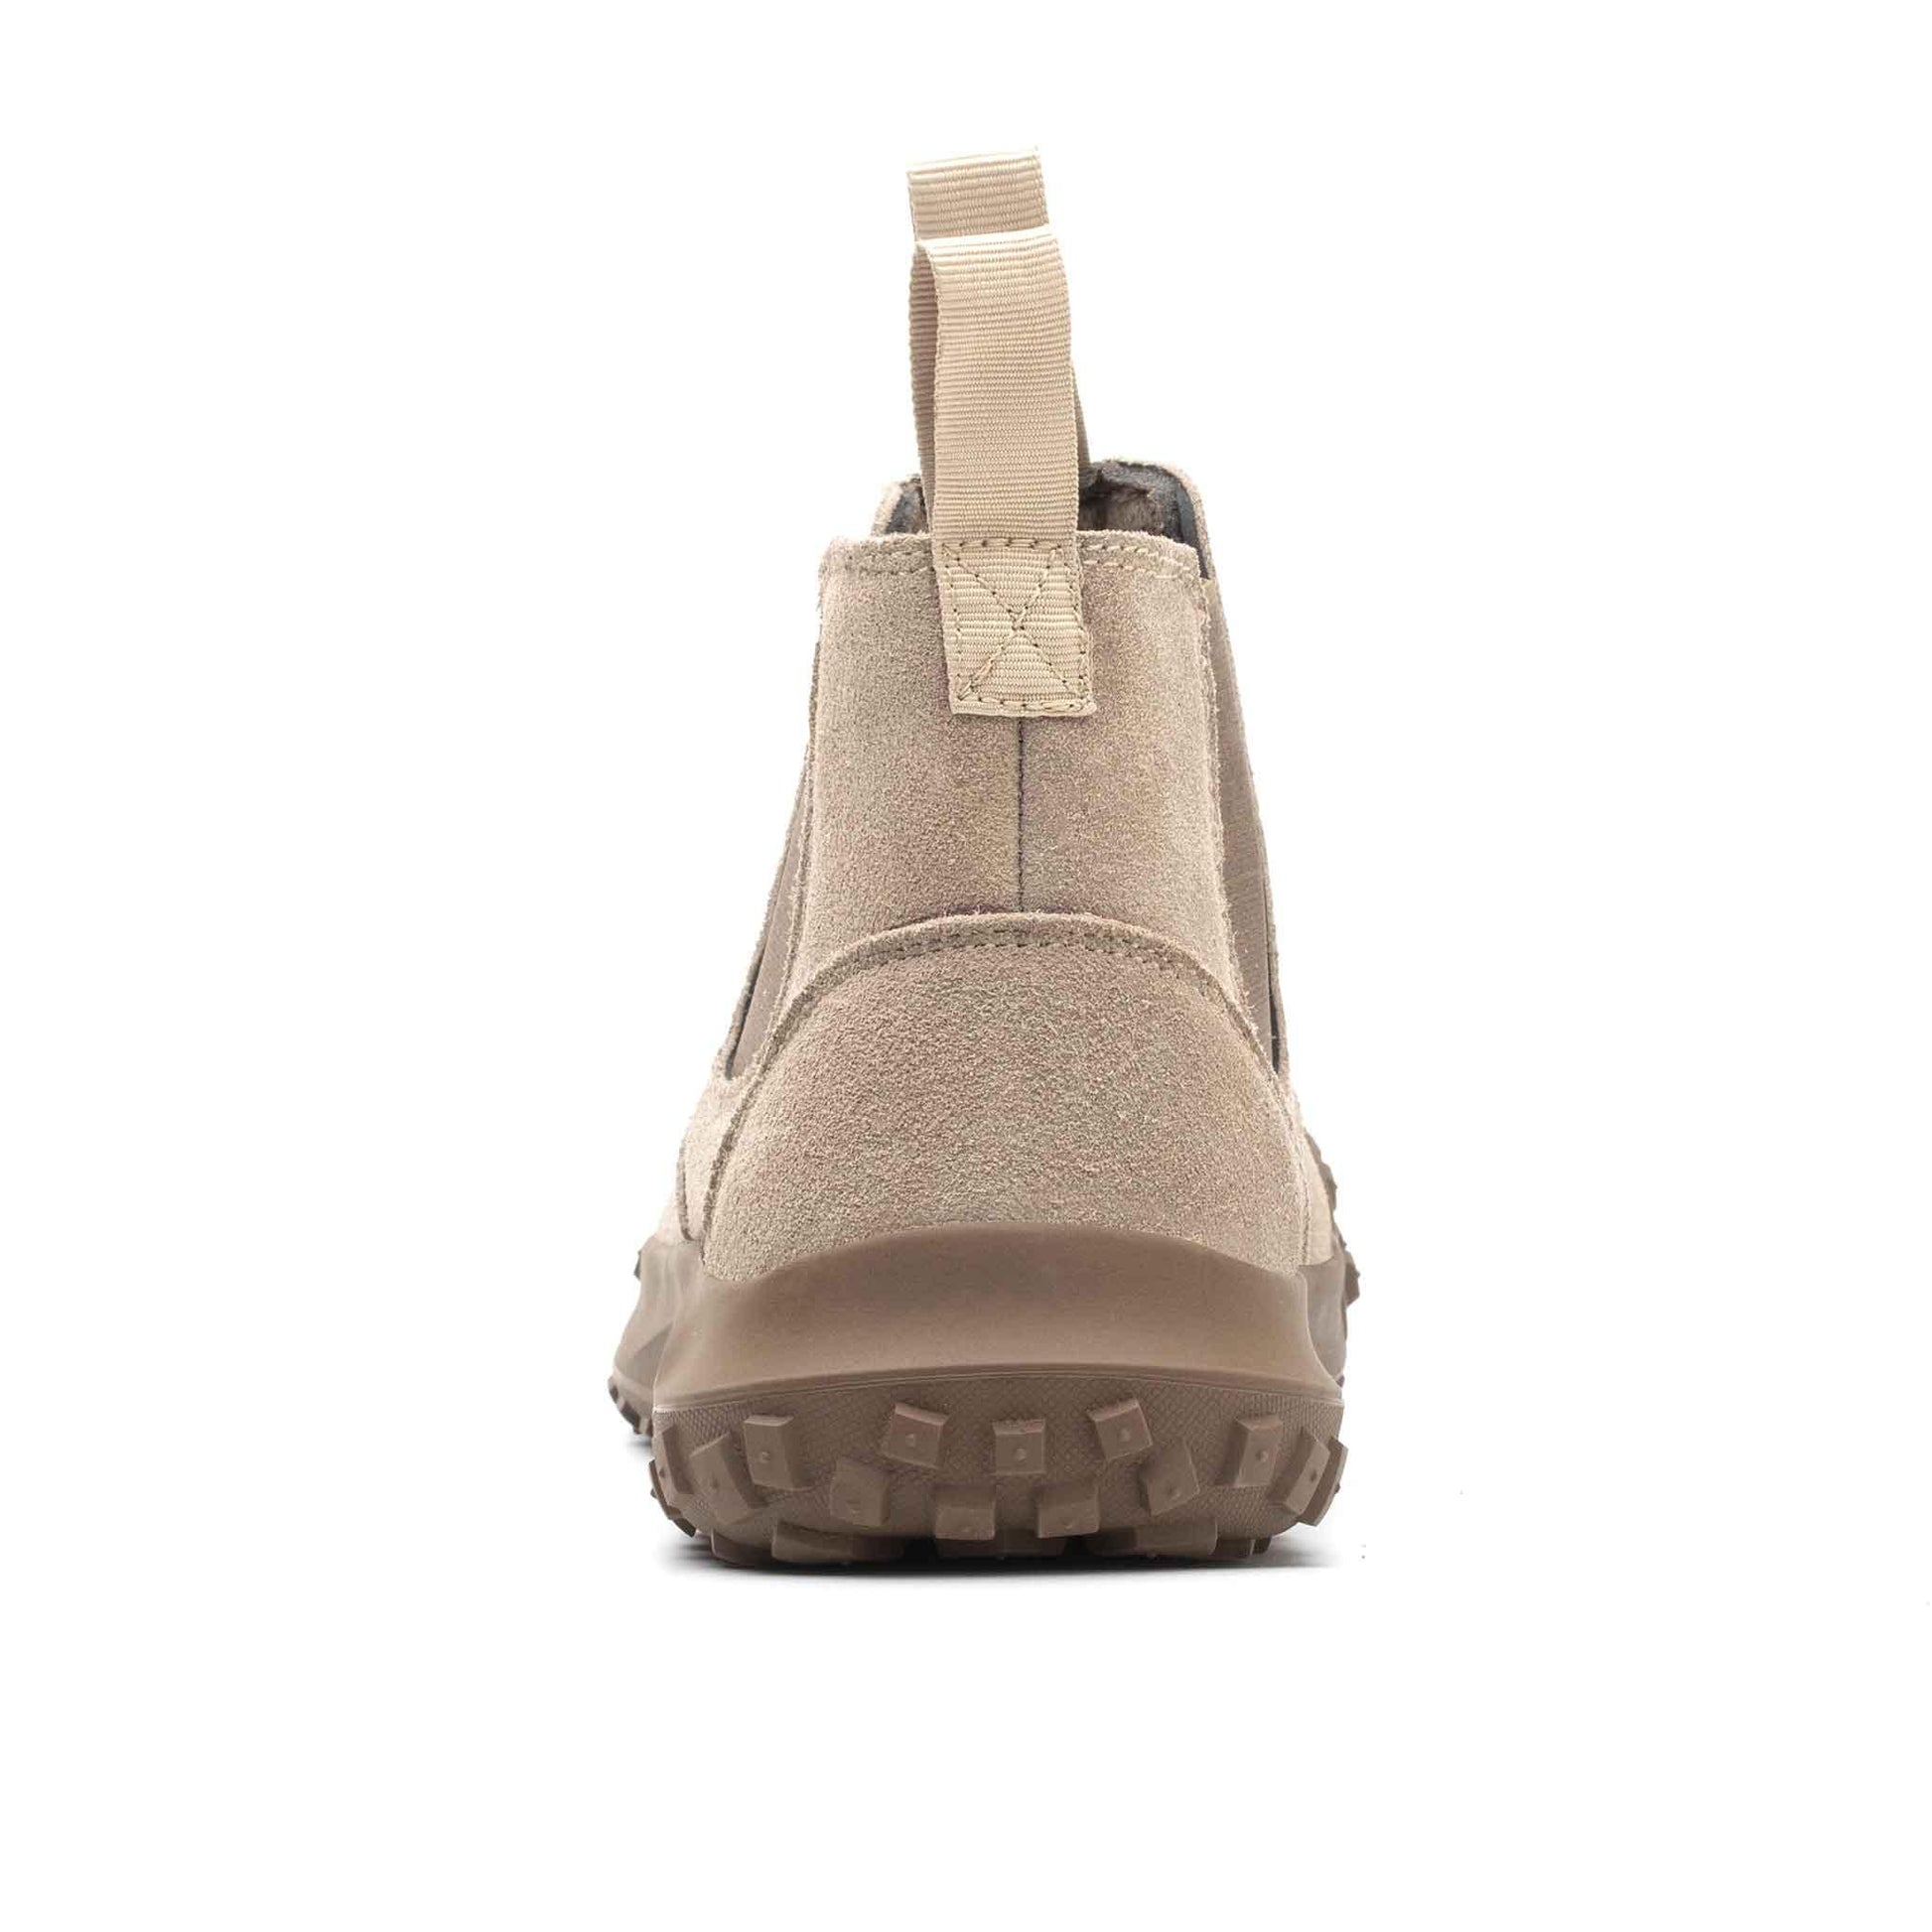 Women's Steel Toe Welding Boot - Rubber Sole | B196 - USINE PRO Footwear